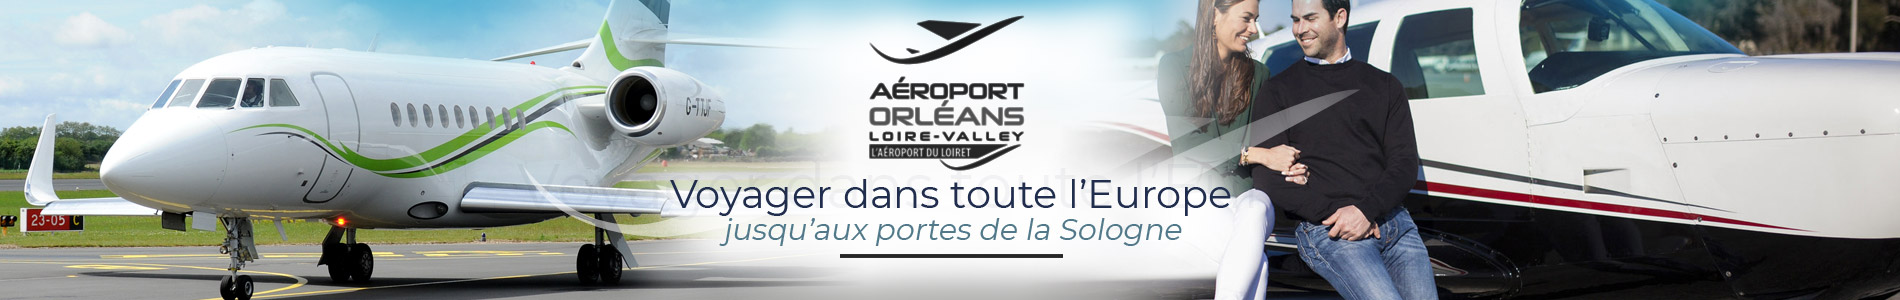 Aeroport Orléans